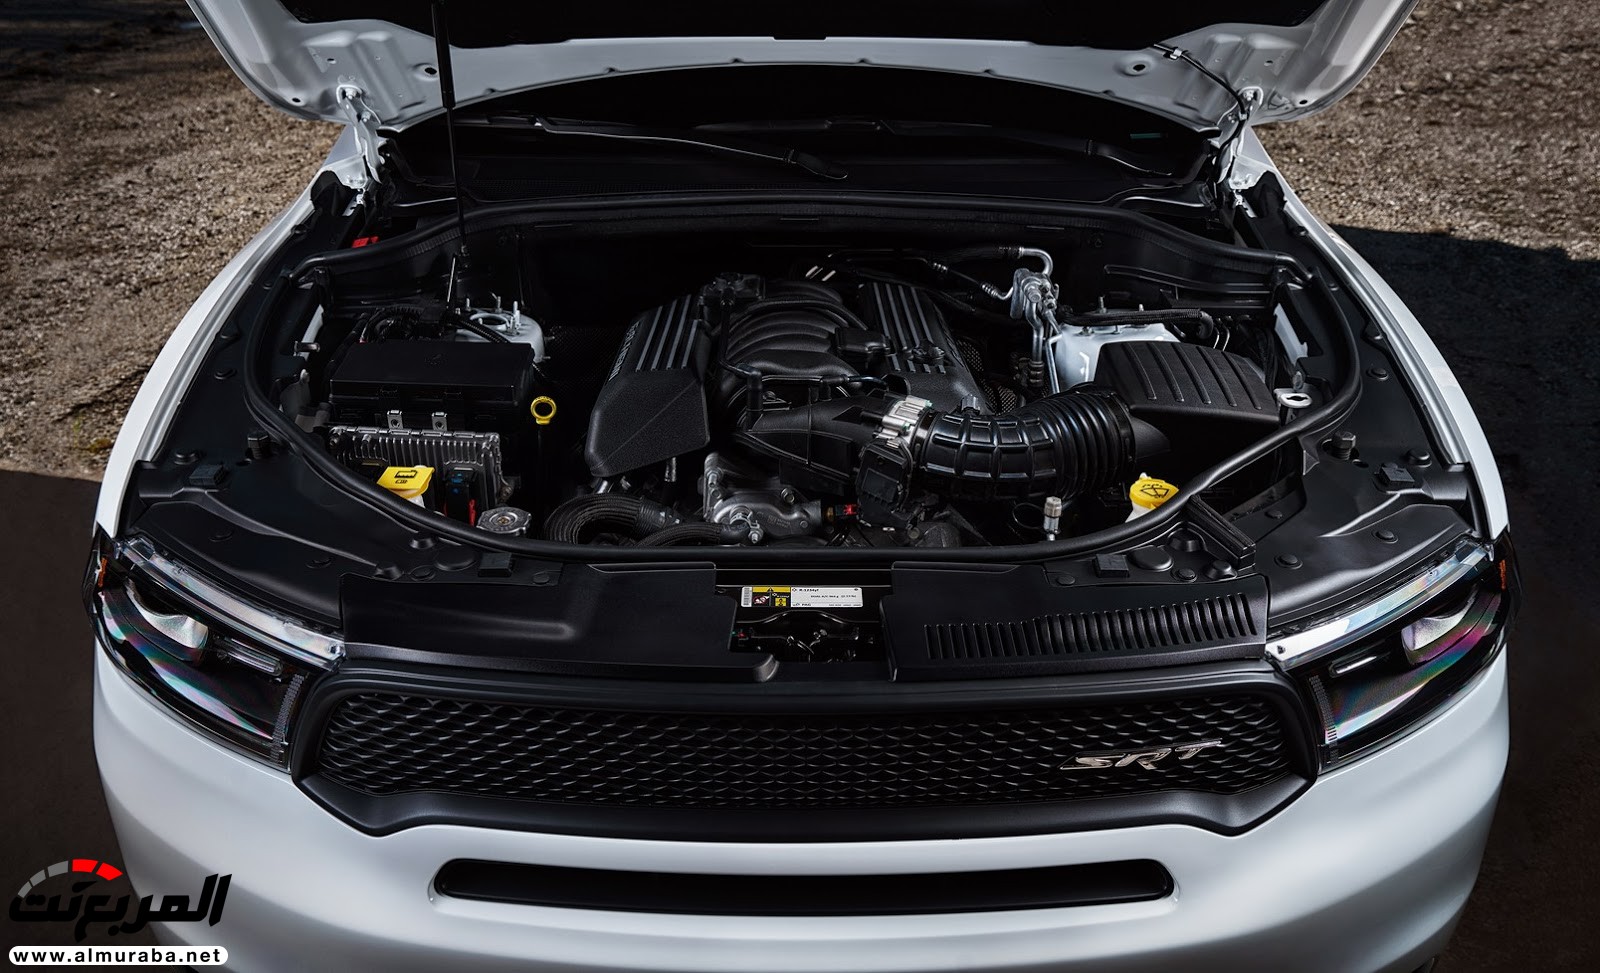 "دودج" دورانجو إس آر تي الجديدة كليا 2018 يكشف عنها بمحرك 475 حصان Dodge Durango SRT 180